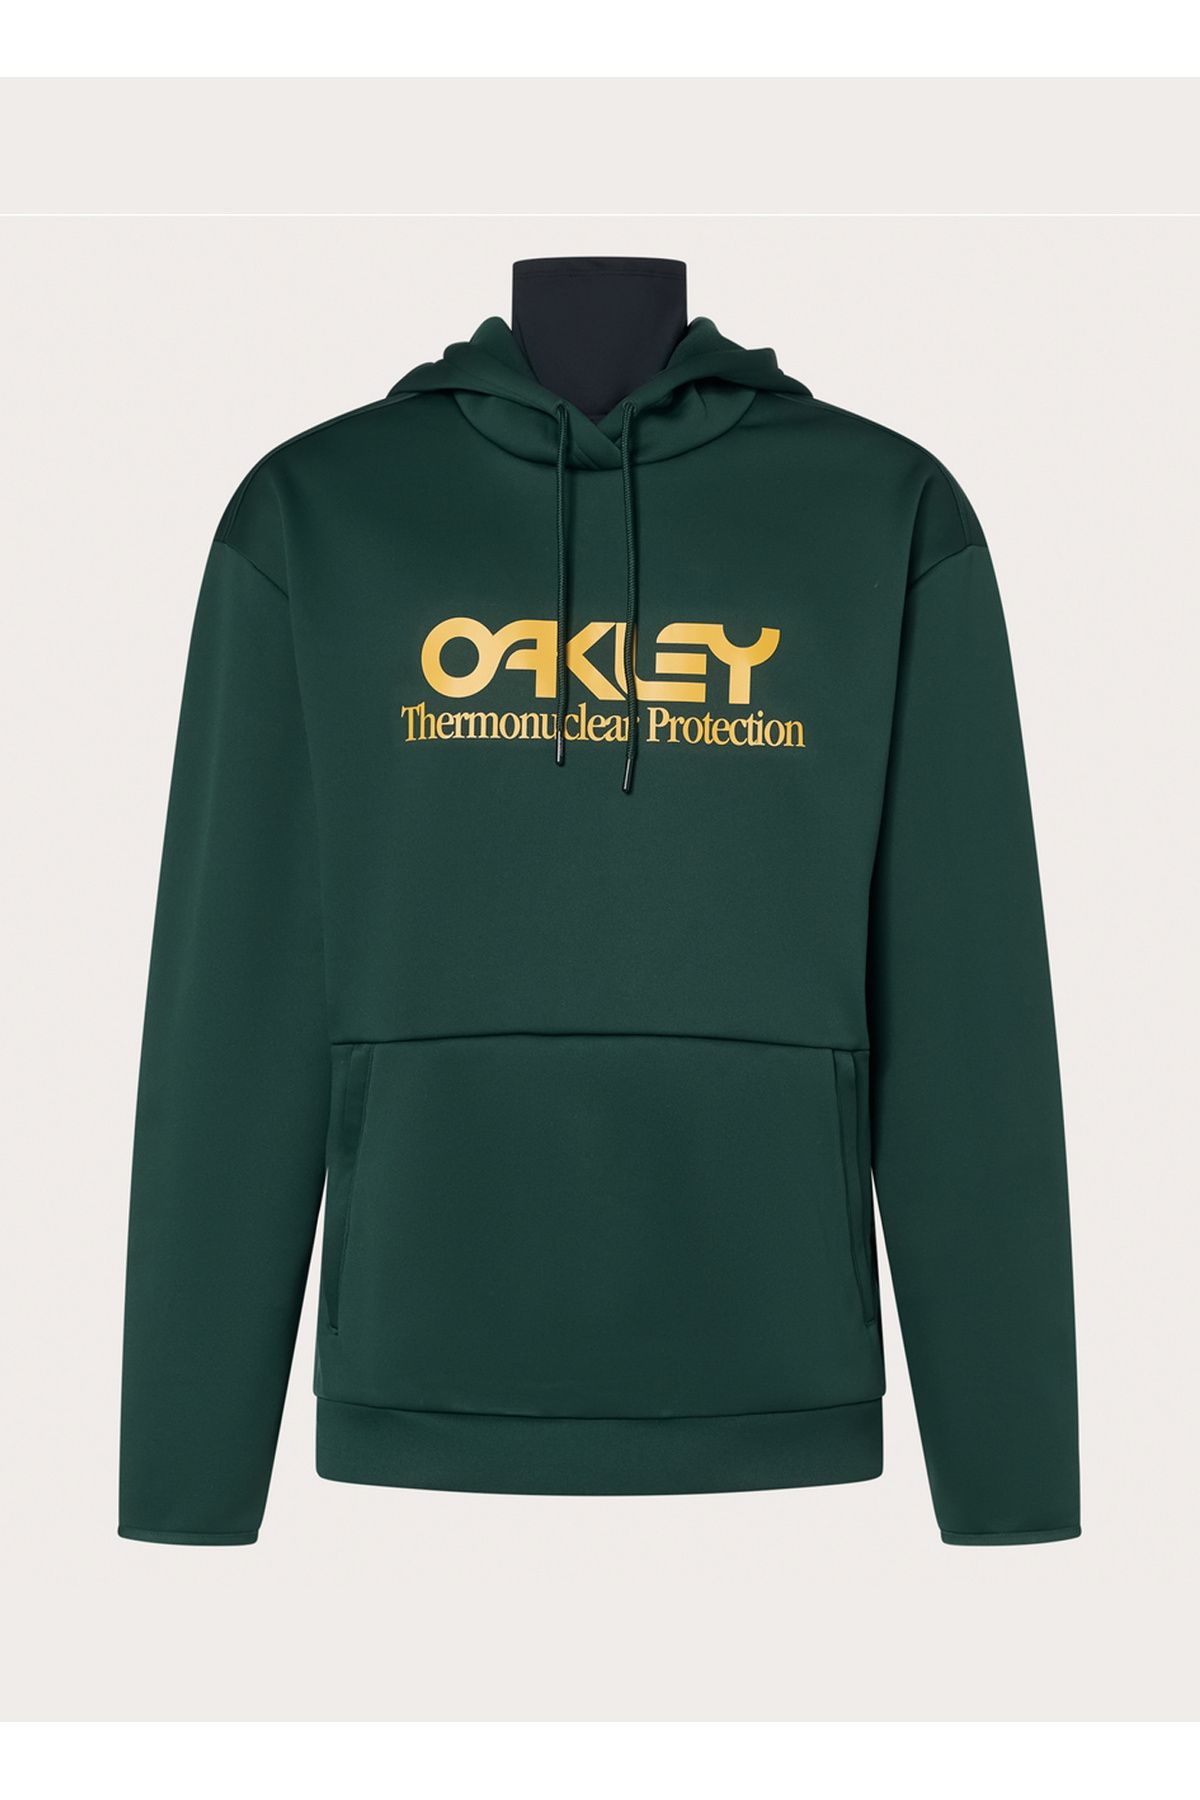 Oakley Sarı - Yeşil Erkek Kapüşonlu Baskılı Sweatshirt FOA402381 RIDER LONG 2.0 HOODIE